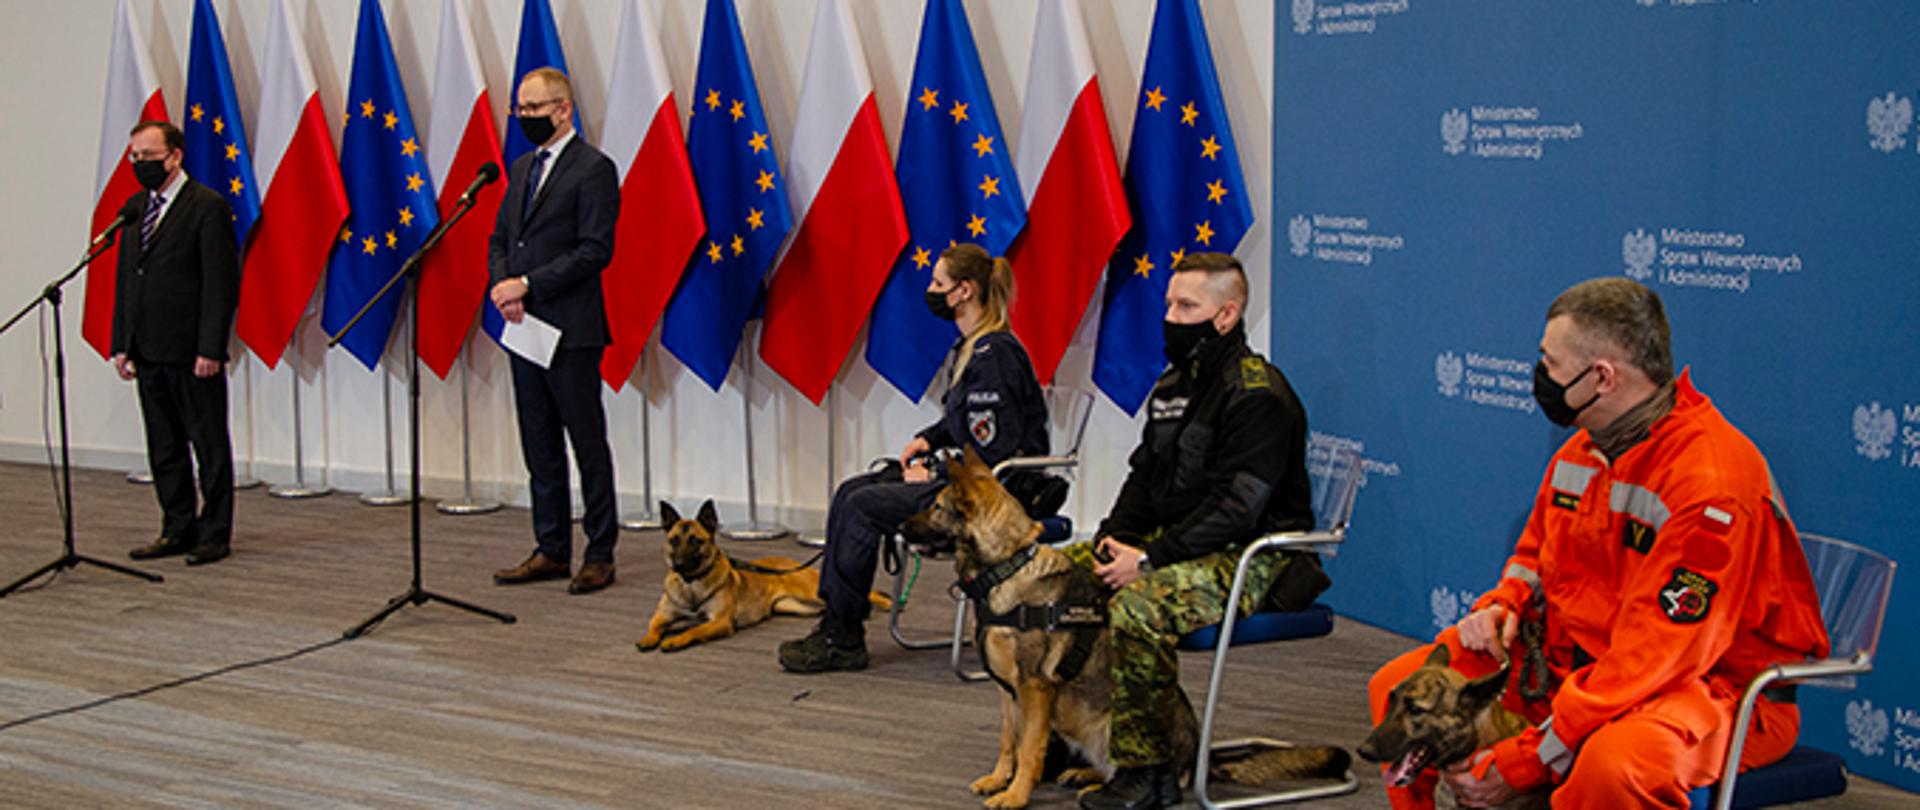 na zdjęciu przedstawiona jest konferencja prasowa ministra mariusza kamińskiego, który stoi na tle biało-czerwonych i unijnych flag, na krzesłach siedzą opiekunowie psów służbowych Policji, Straży Granicznej i Państwowej Straży Pożarnej wraz ze swymi podopiecznymi.